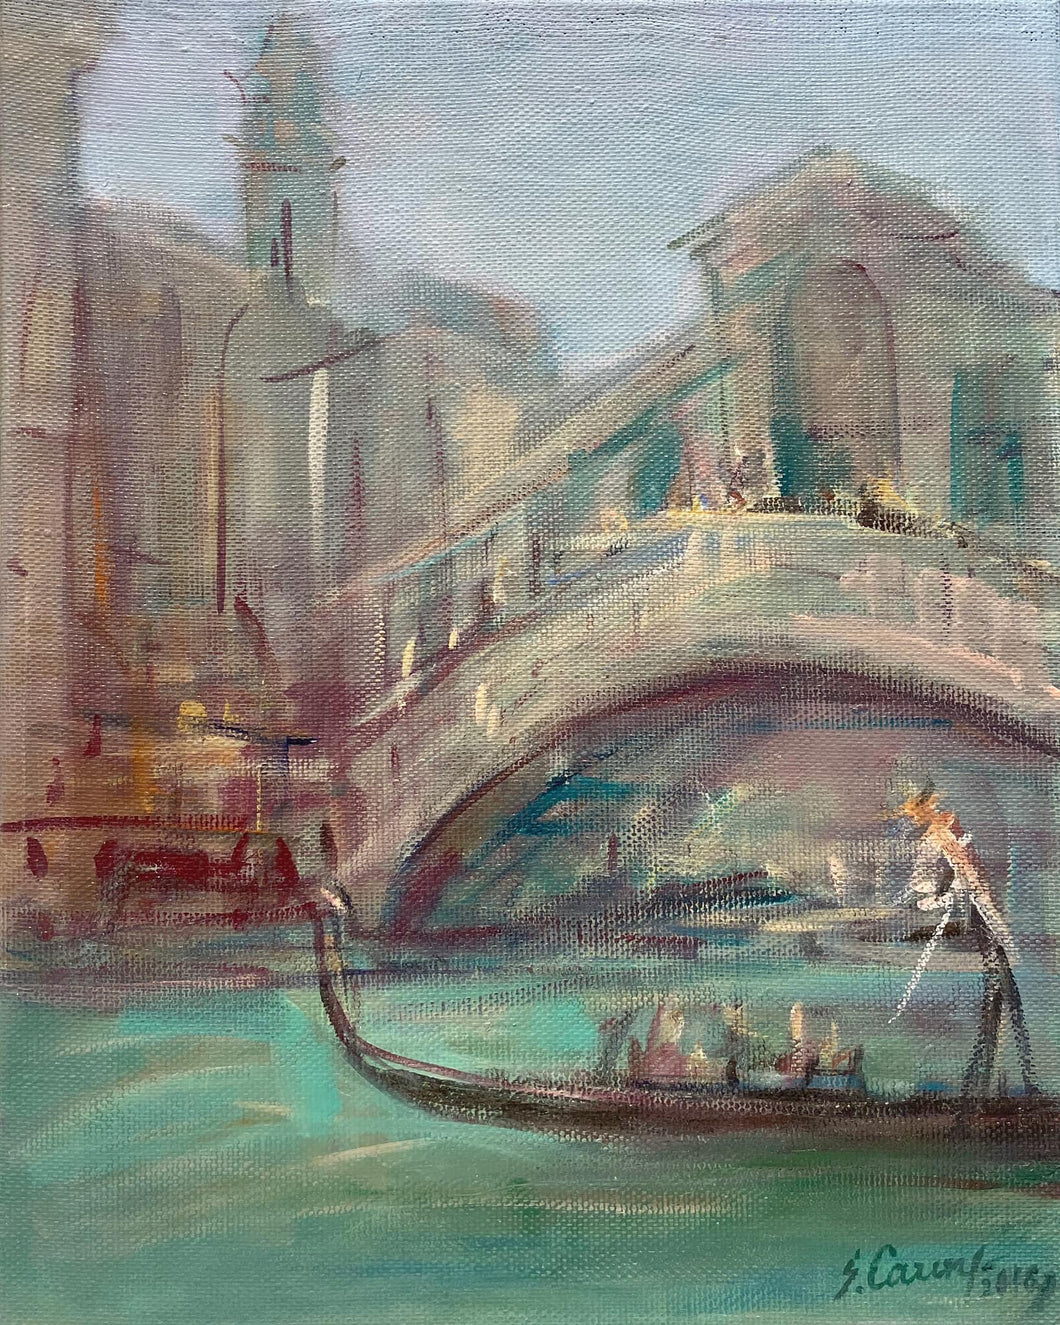 Venice in the morning at the Rialto Bridge